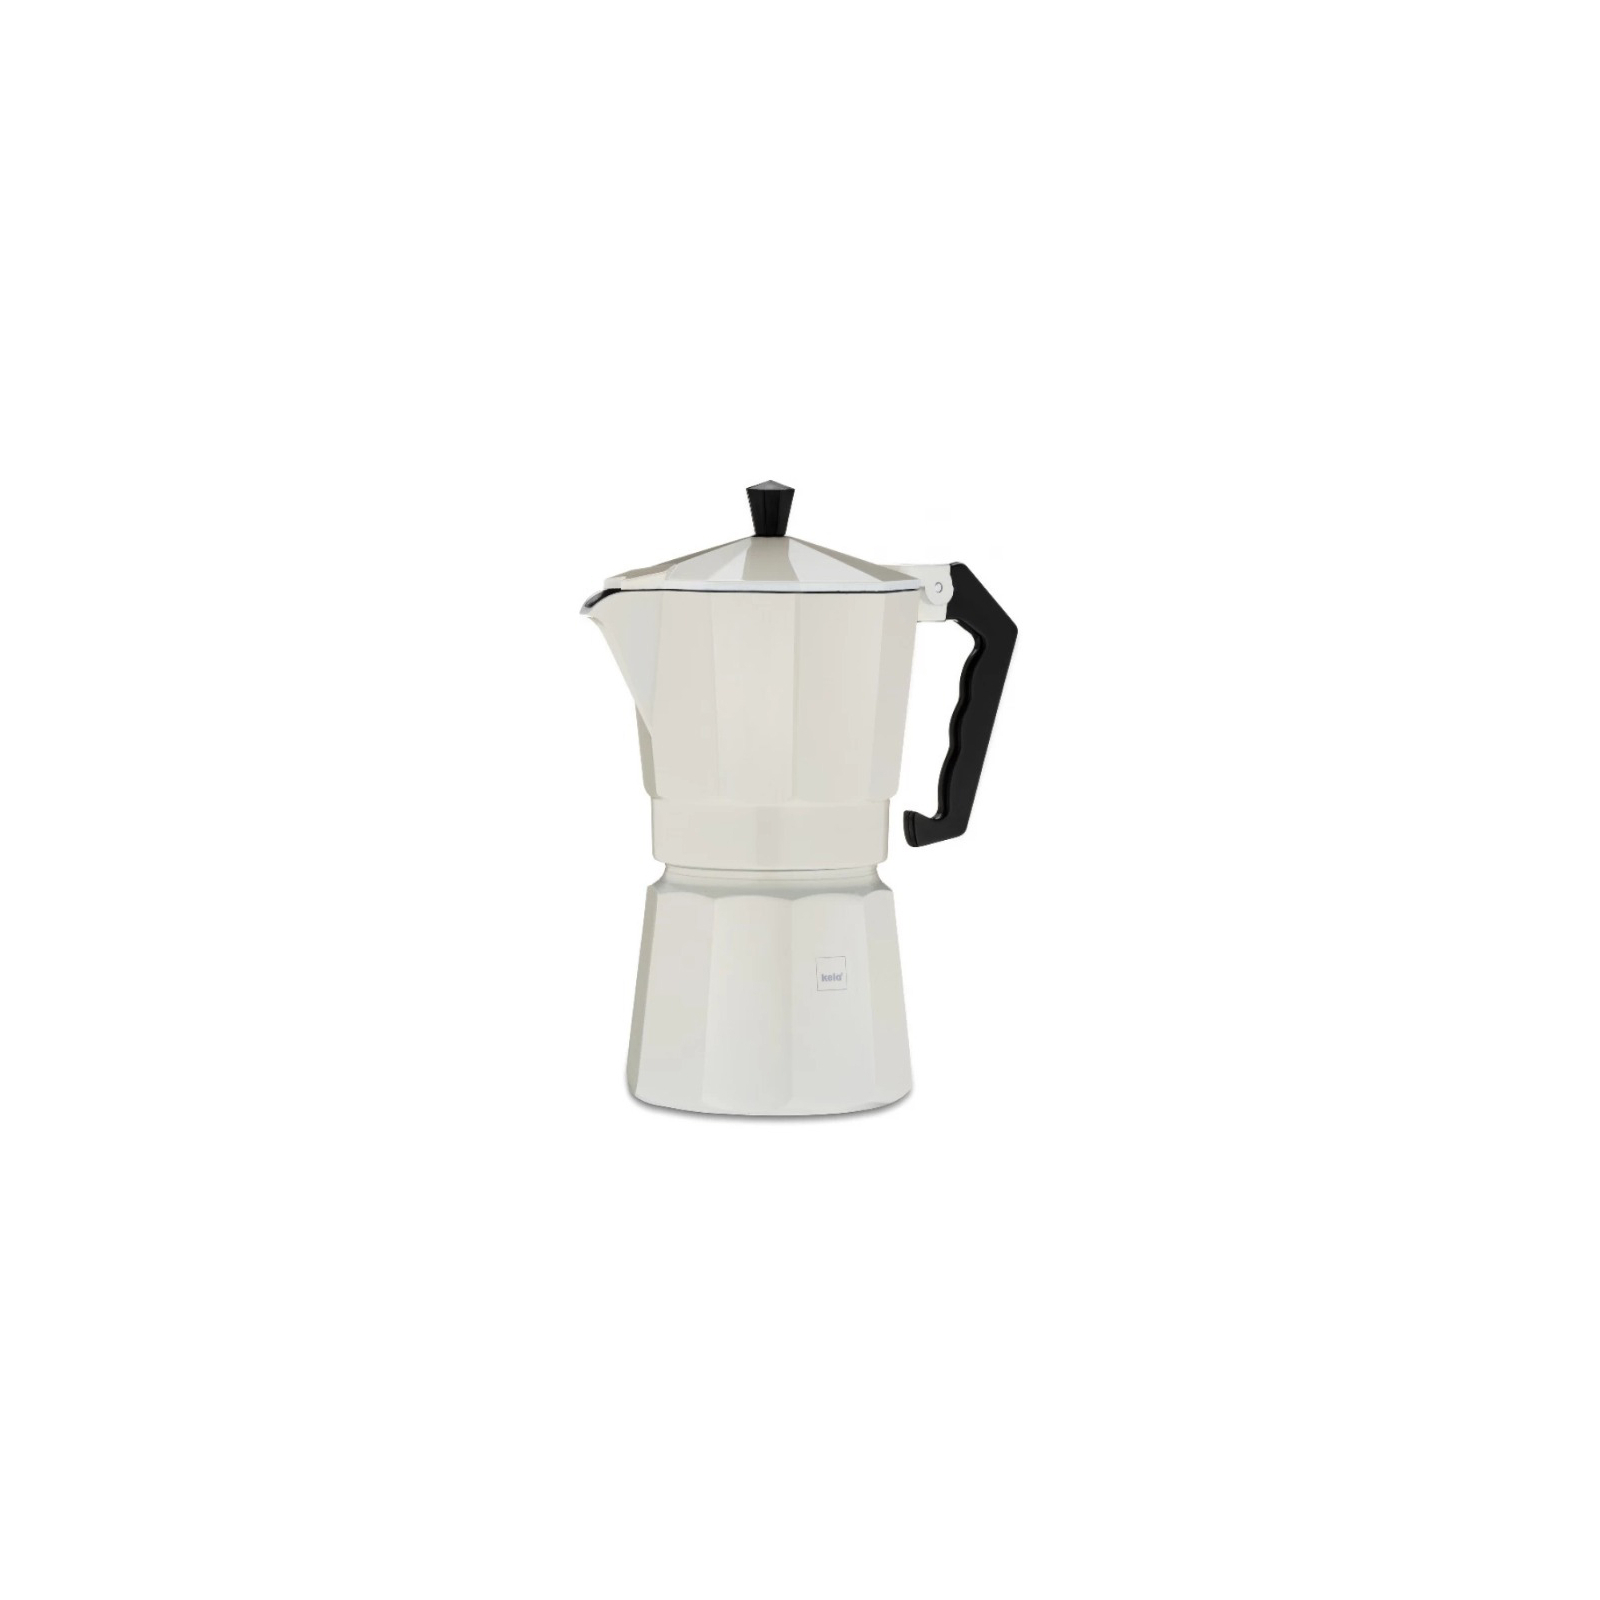 Гейзерная кофеварка Kela Italia 450 мл 9 Cap Beige (10552)